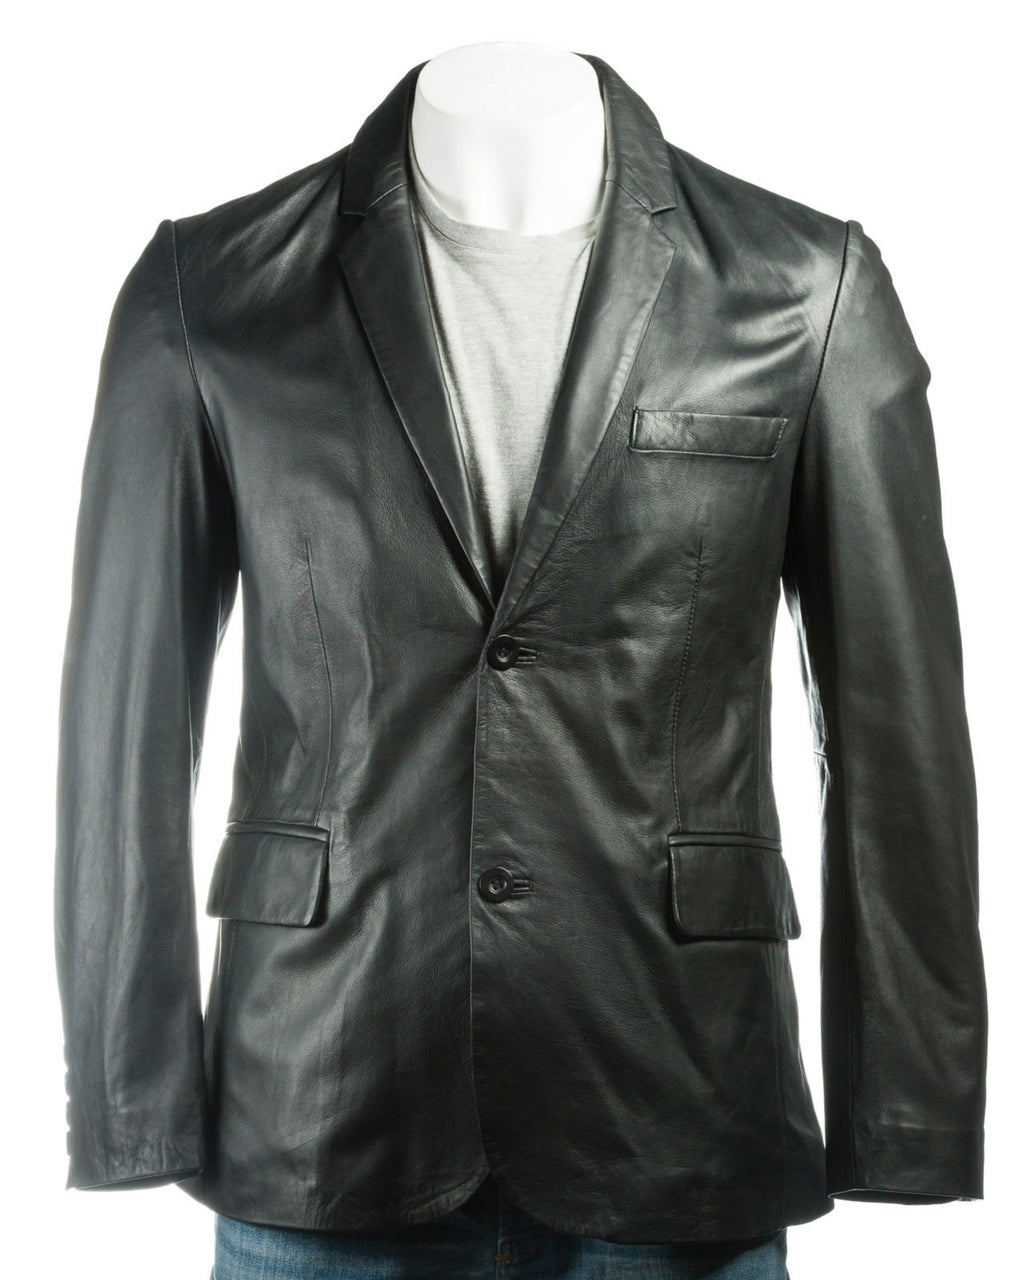 Men's Black Classic Two Button Single Breasted Leather Blazer: Marcello